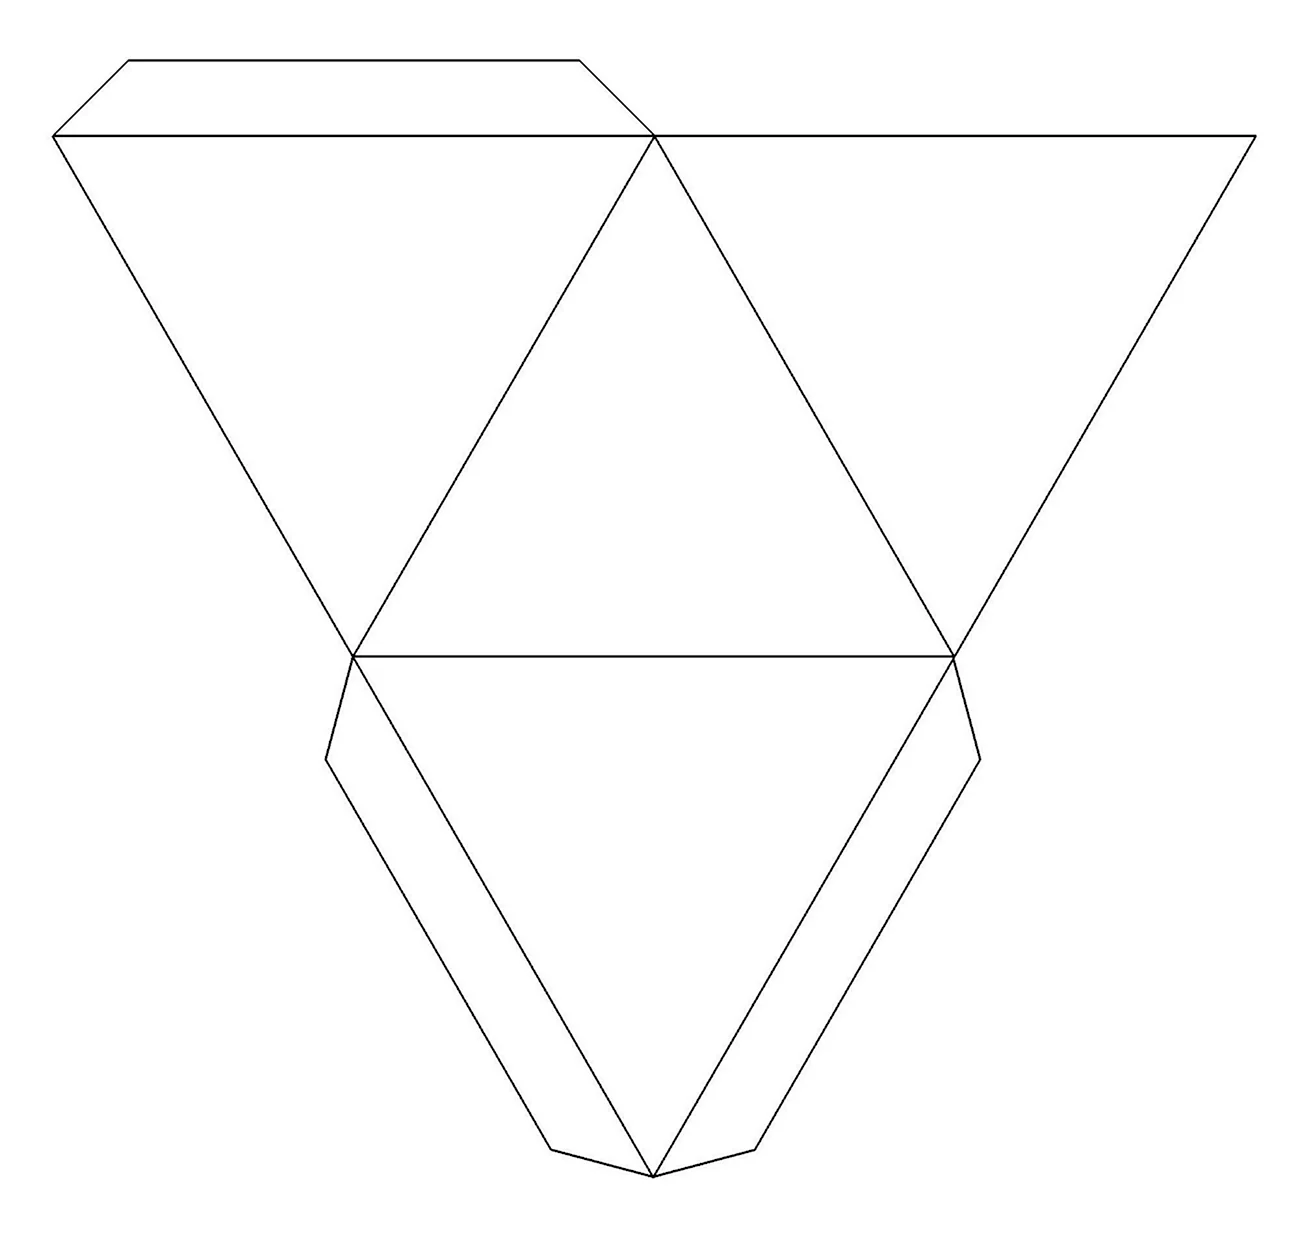 Правильная треугольная пирамида ращвеетуа. Своими руками